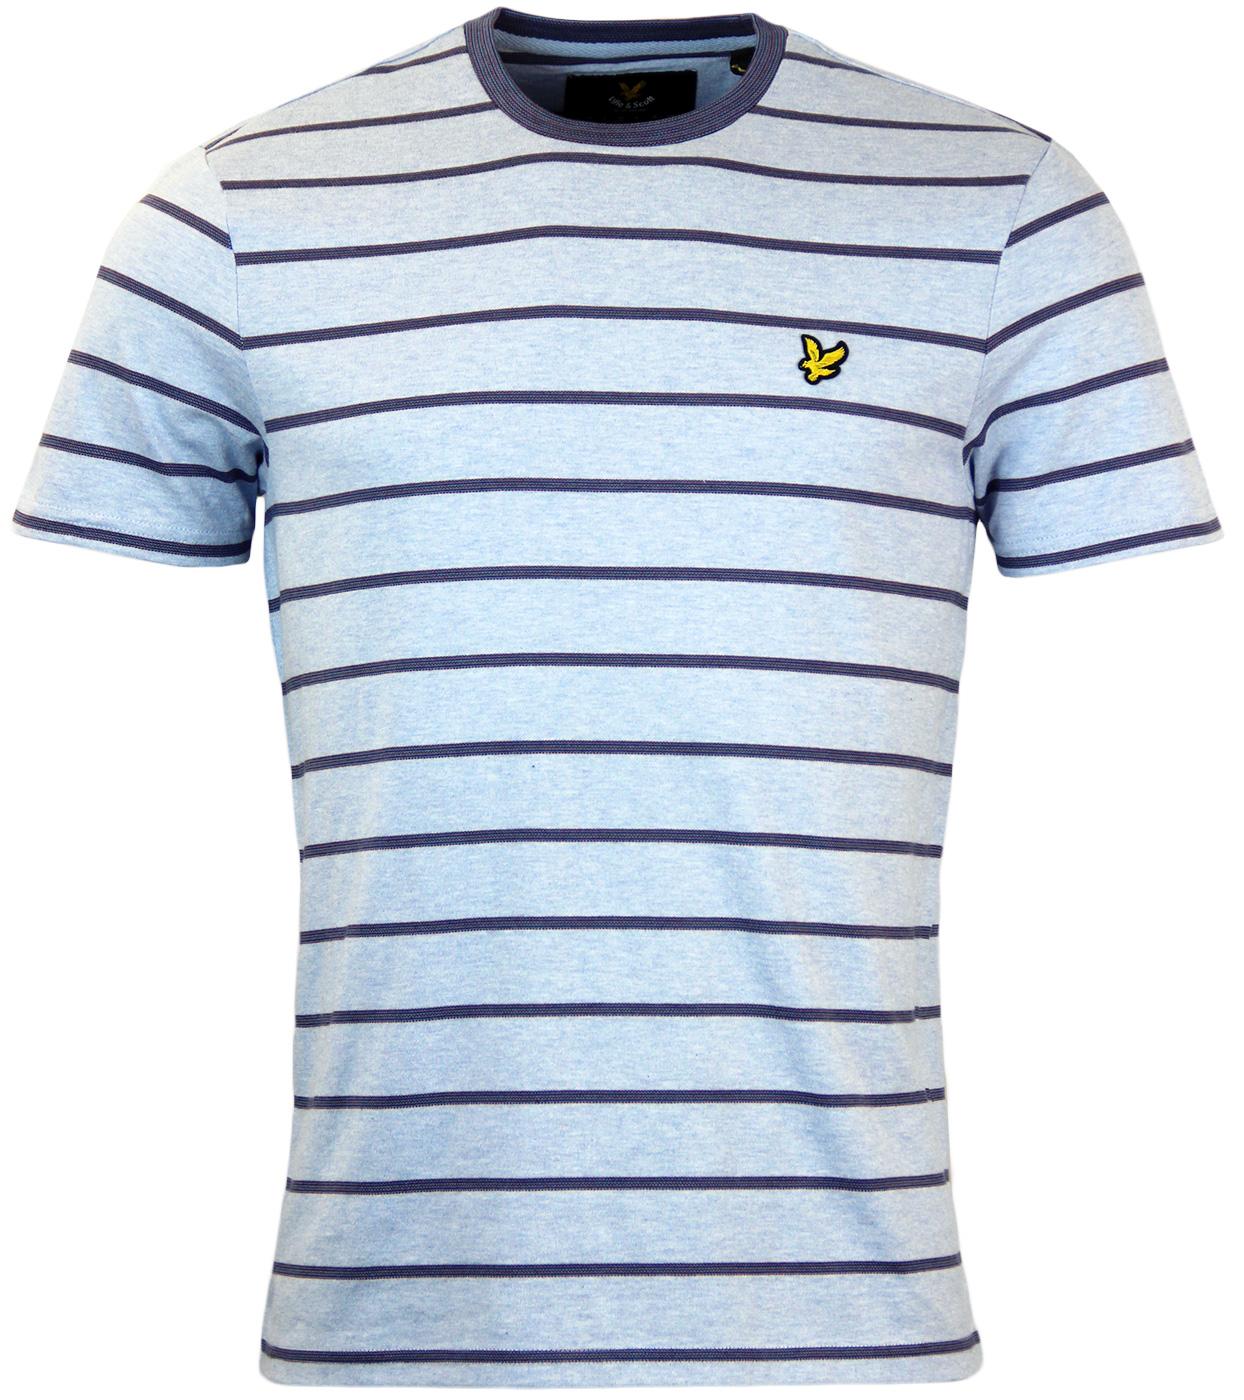 Birdseye LYLE & SCOTT Retro Indie Stripe T-Shirt